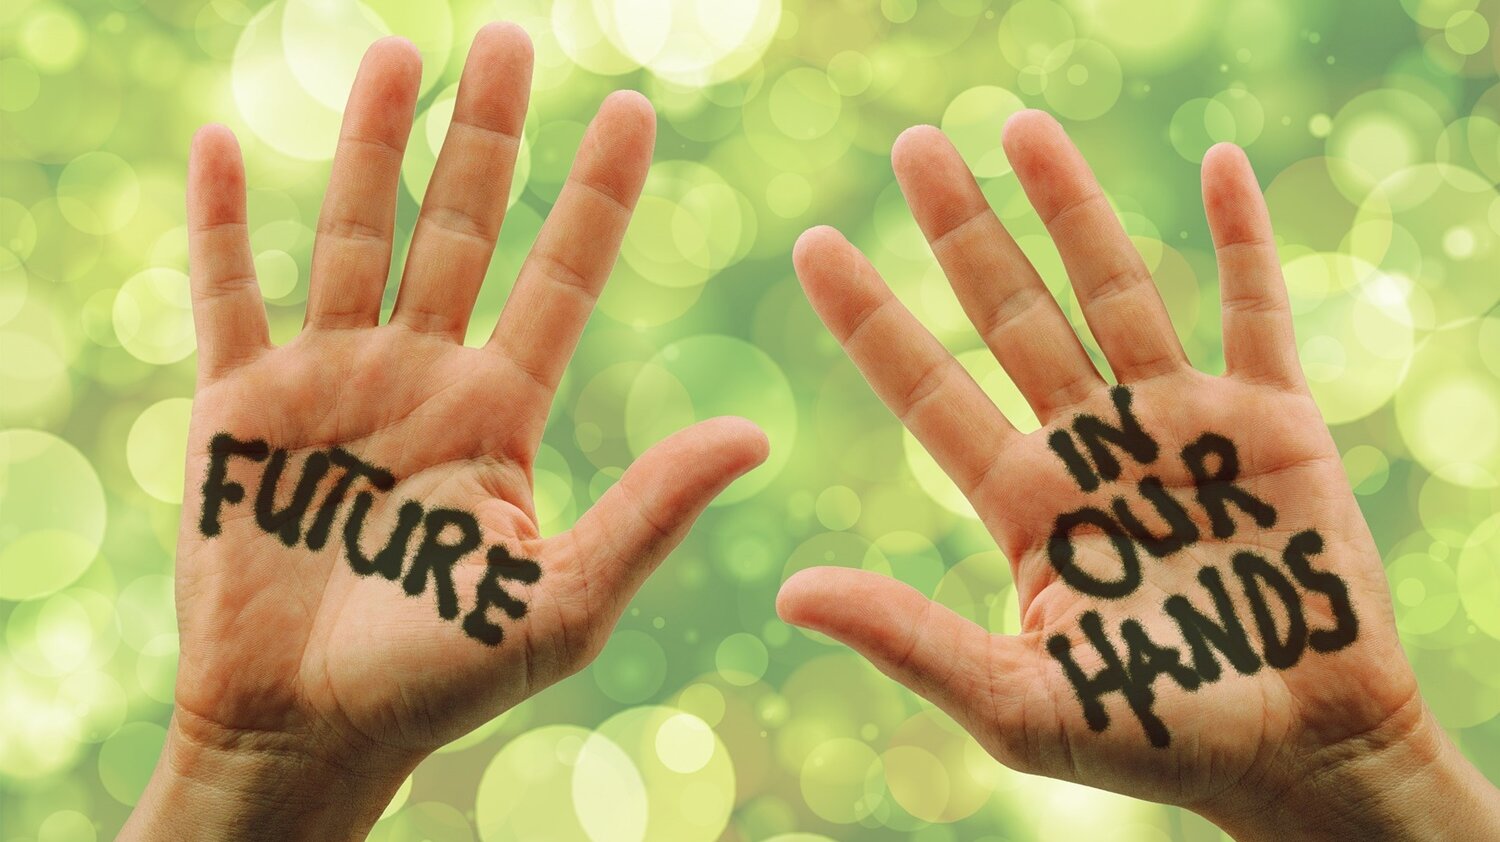 Zwei Hände mit der Aufschrift "Future in our Hands"